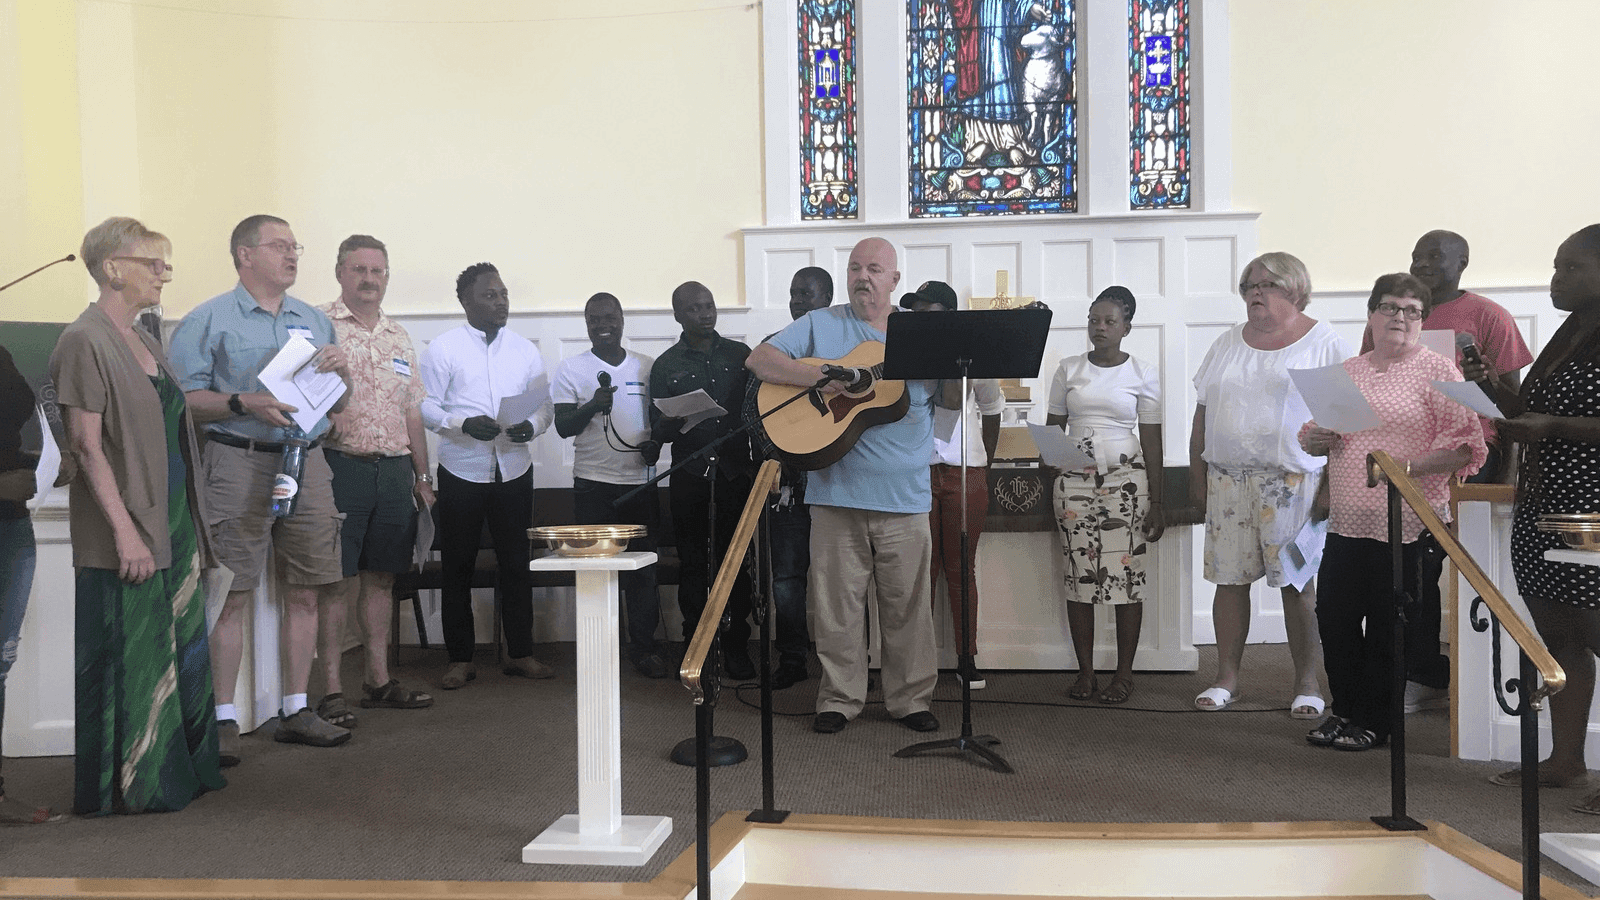 asylum-seekers sing in a church choir